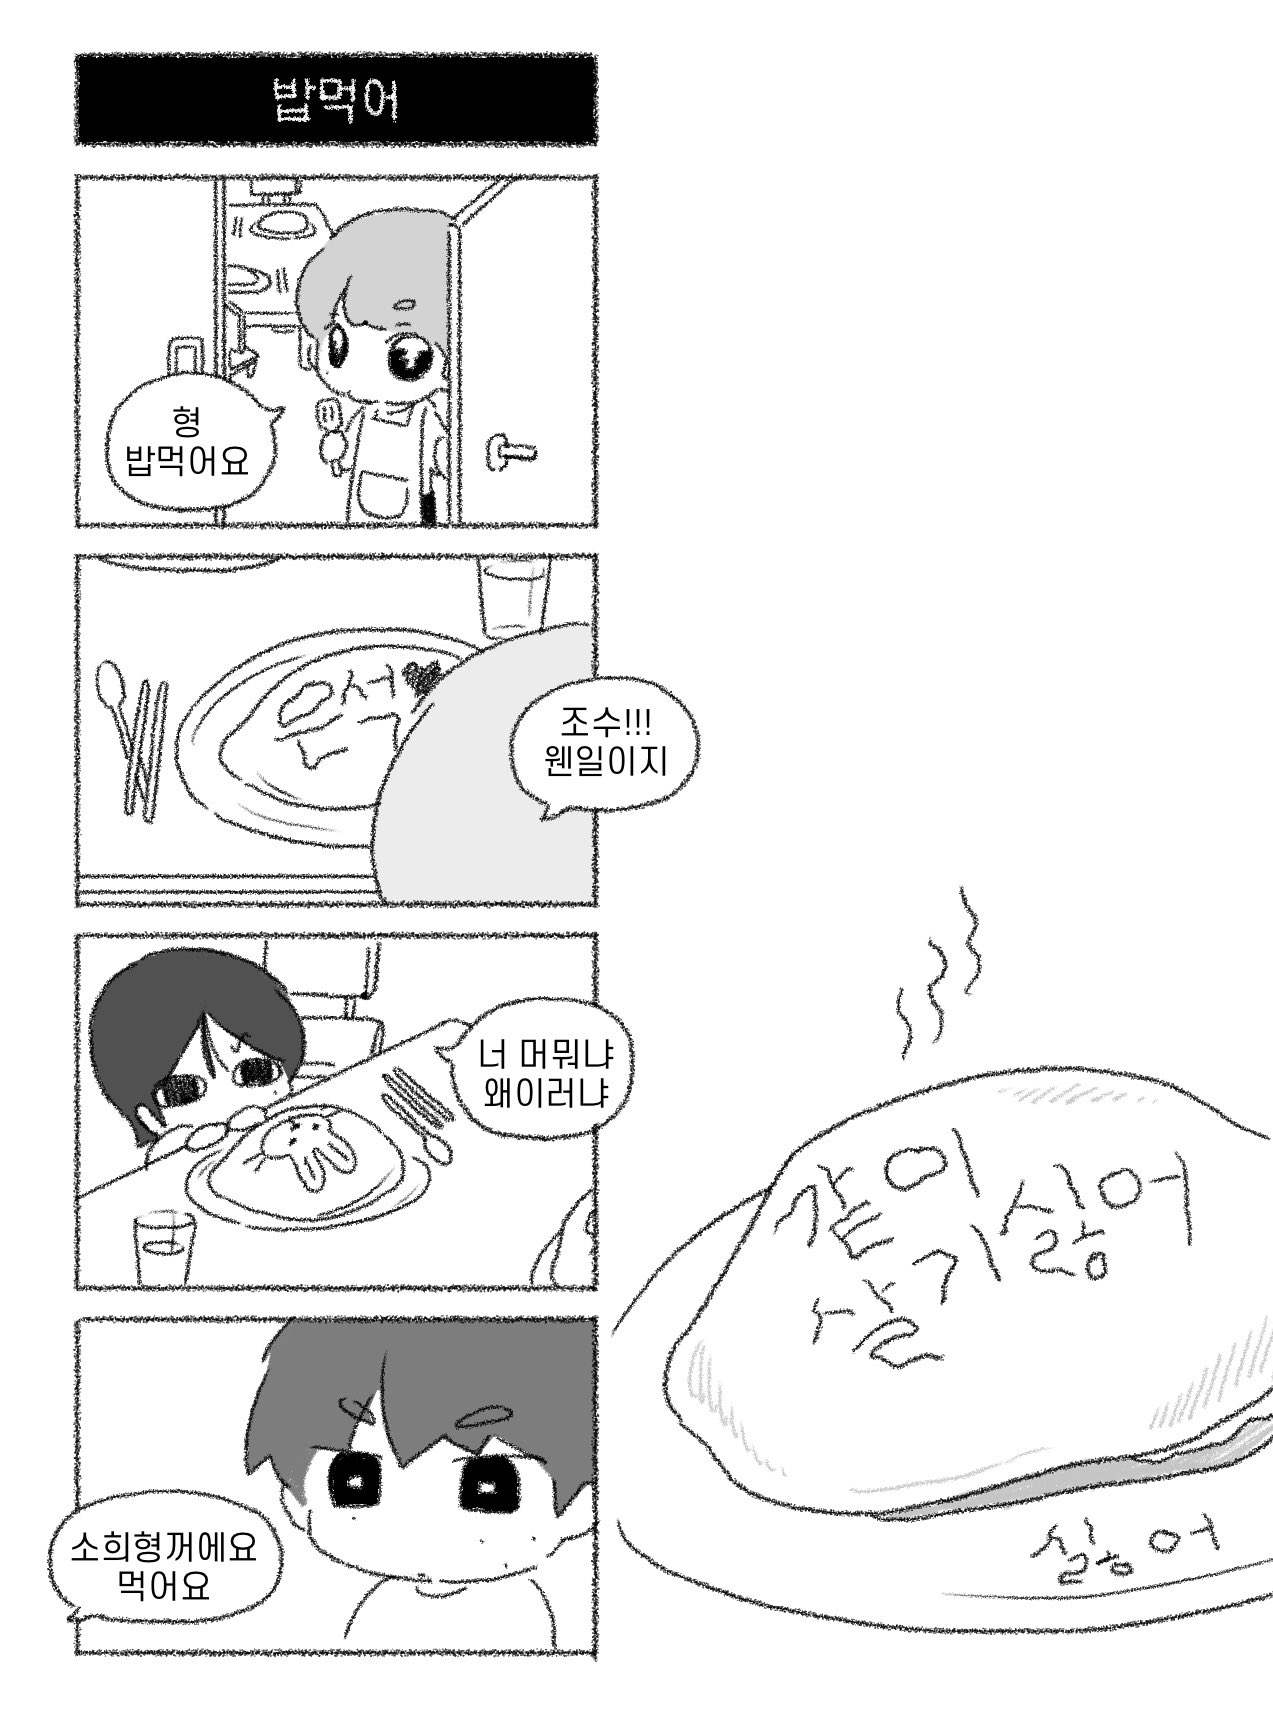 [잡담] 또토리 석과비니 만화 너무 귀엽다 | 인스티즈